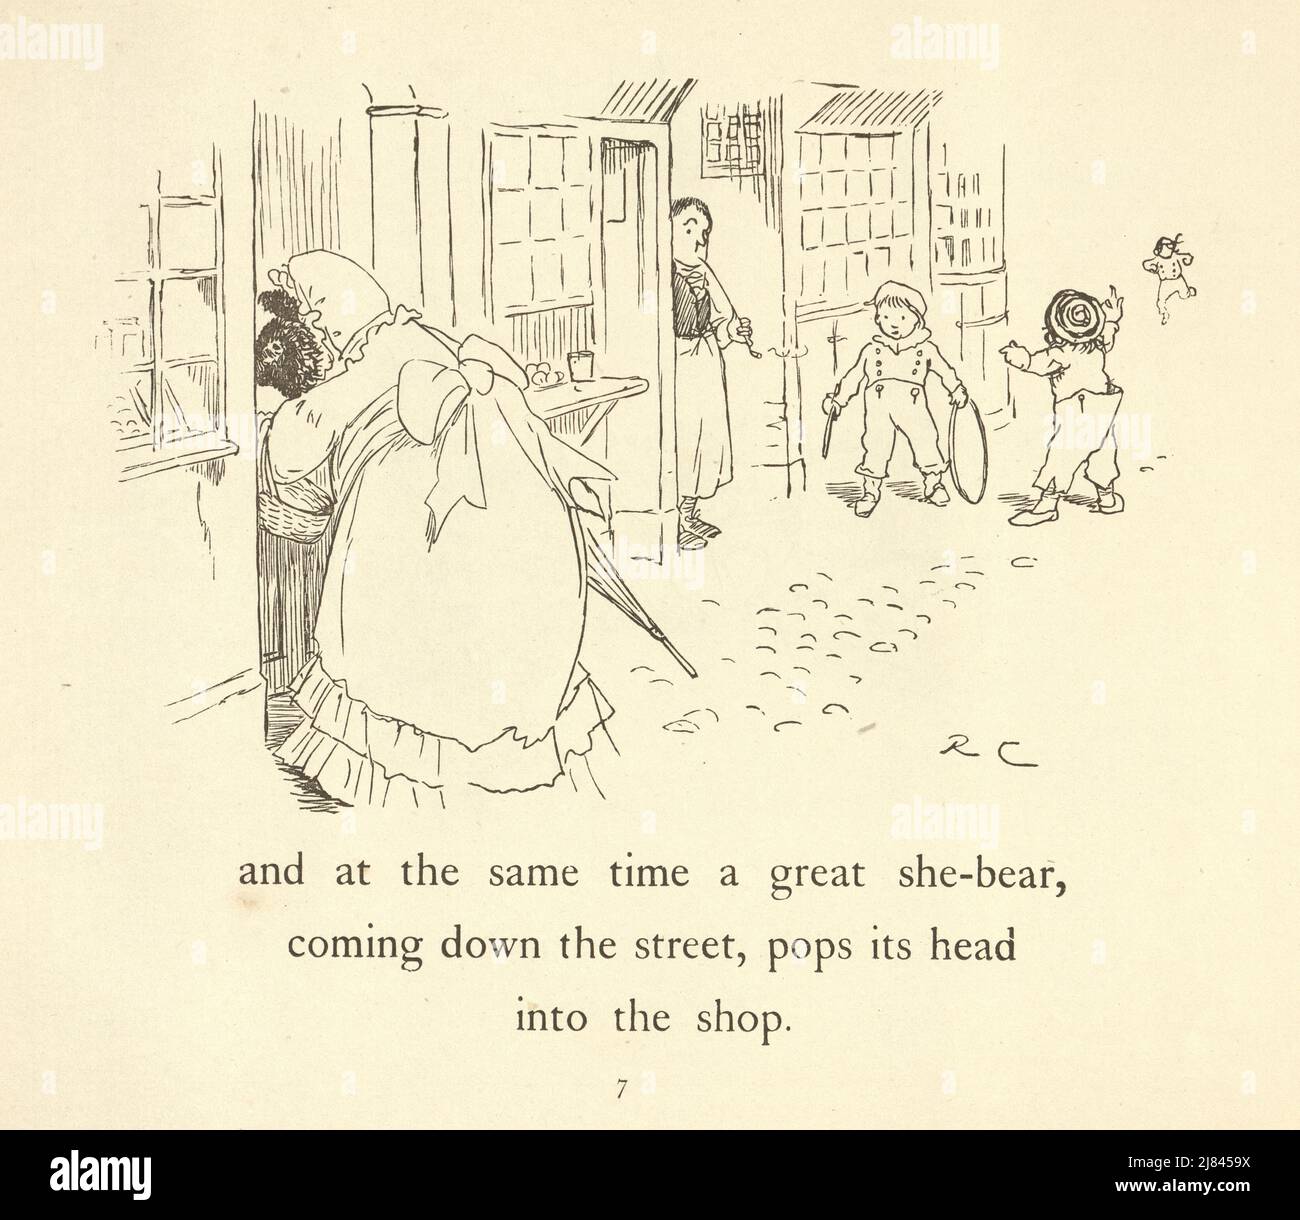 Vintage-Illustration der Szene aus dem Großen Panjandrum selbst, illustriert von Randolph Caldecott. Tragen Sie sich in ein Kleid gekleidet und gehen Sie die Straße entlang Stockfoto